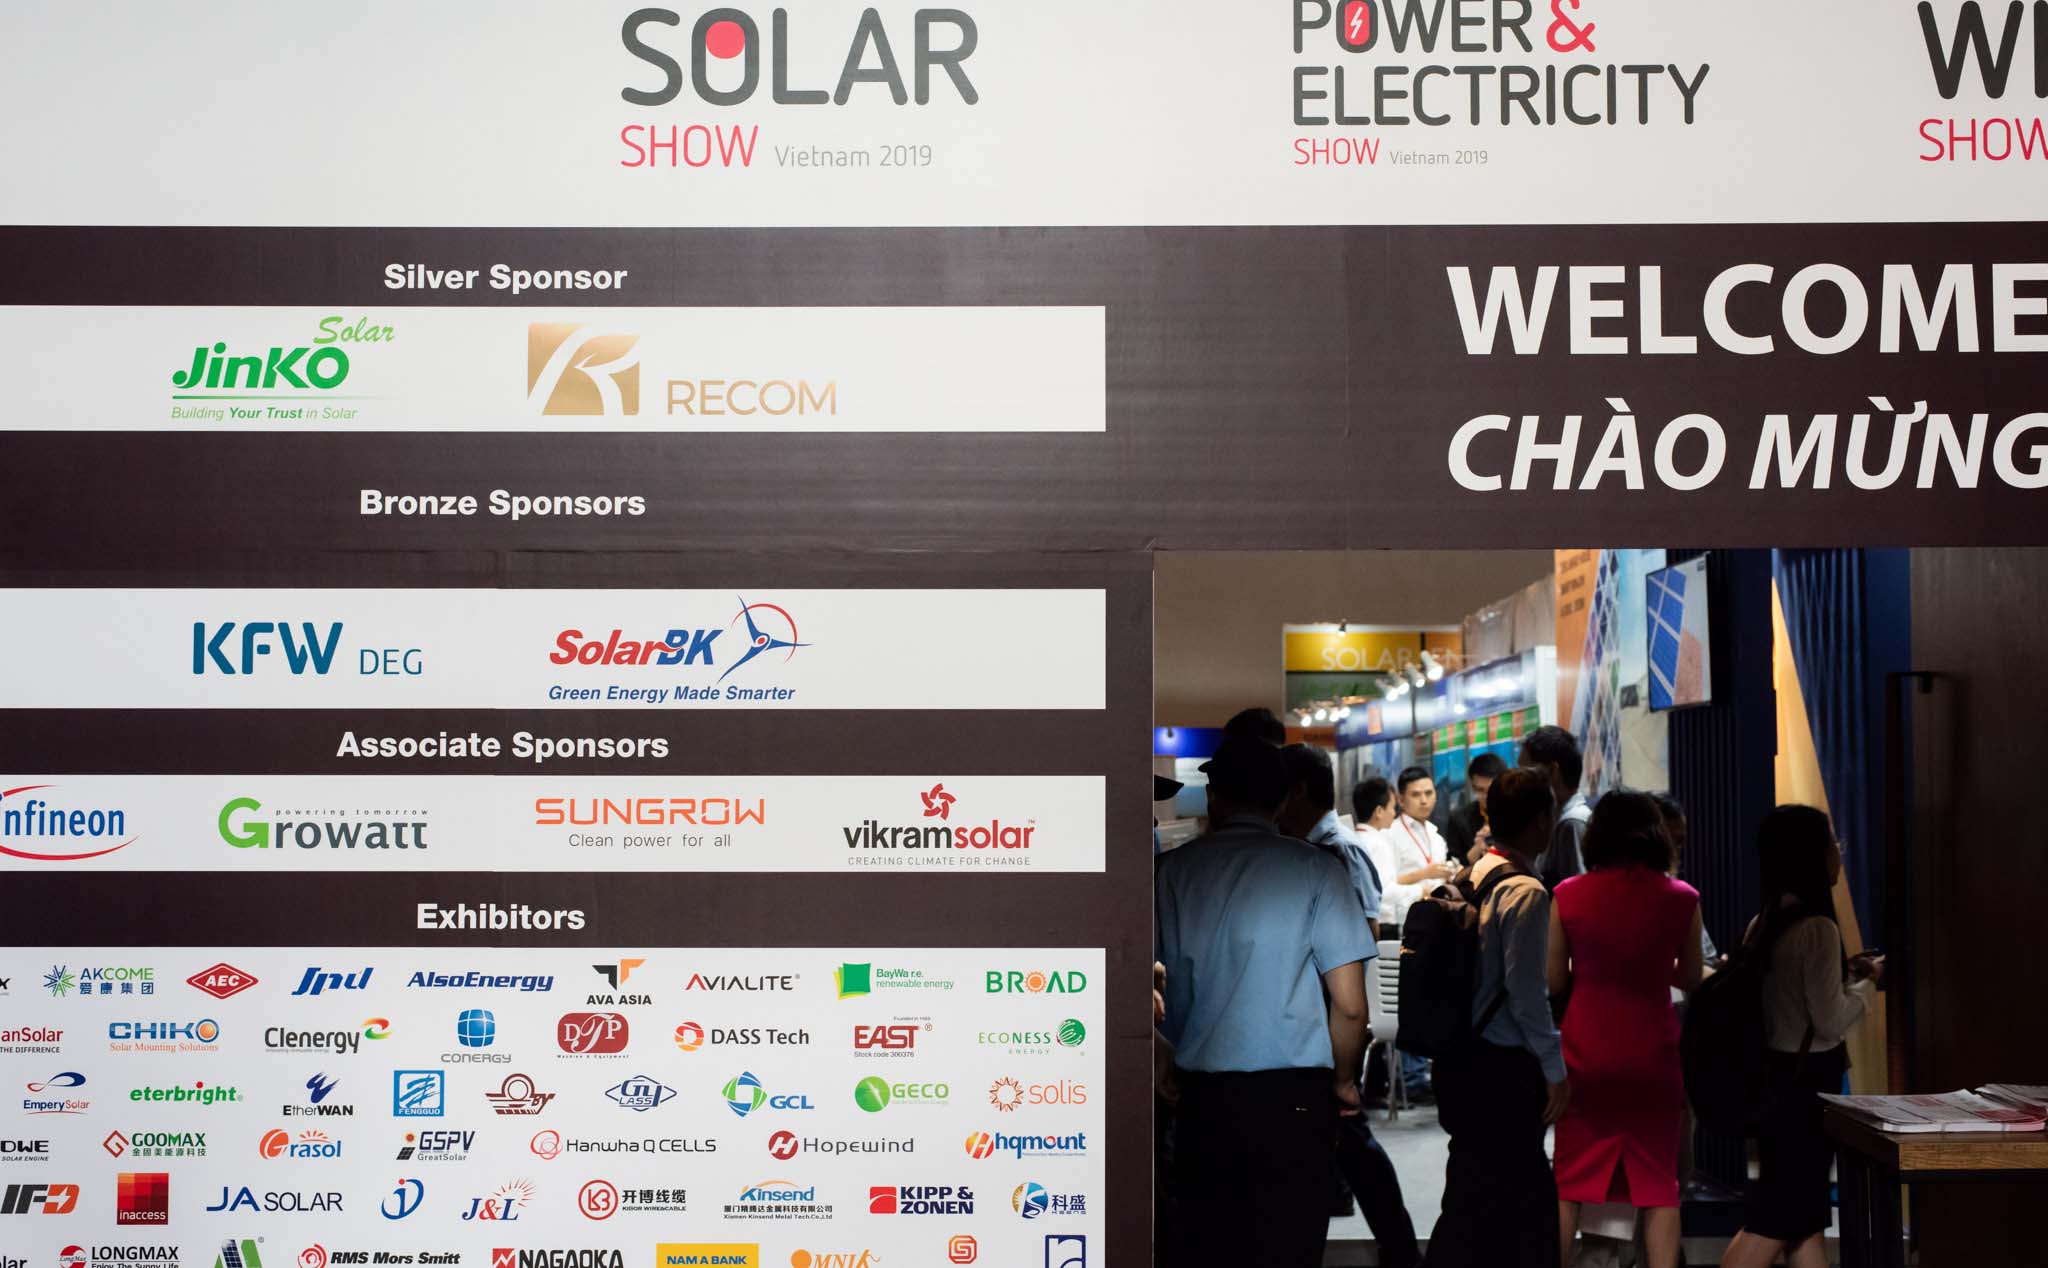 Triển lãm về sản phẩm và giải pháp năng lượng tái tạo Solar Show, mời anh em tham gia